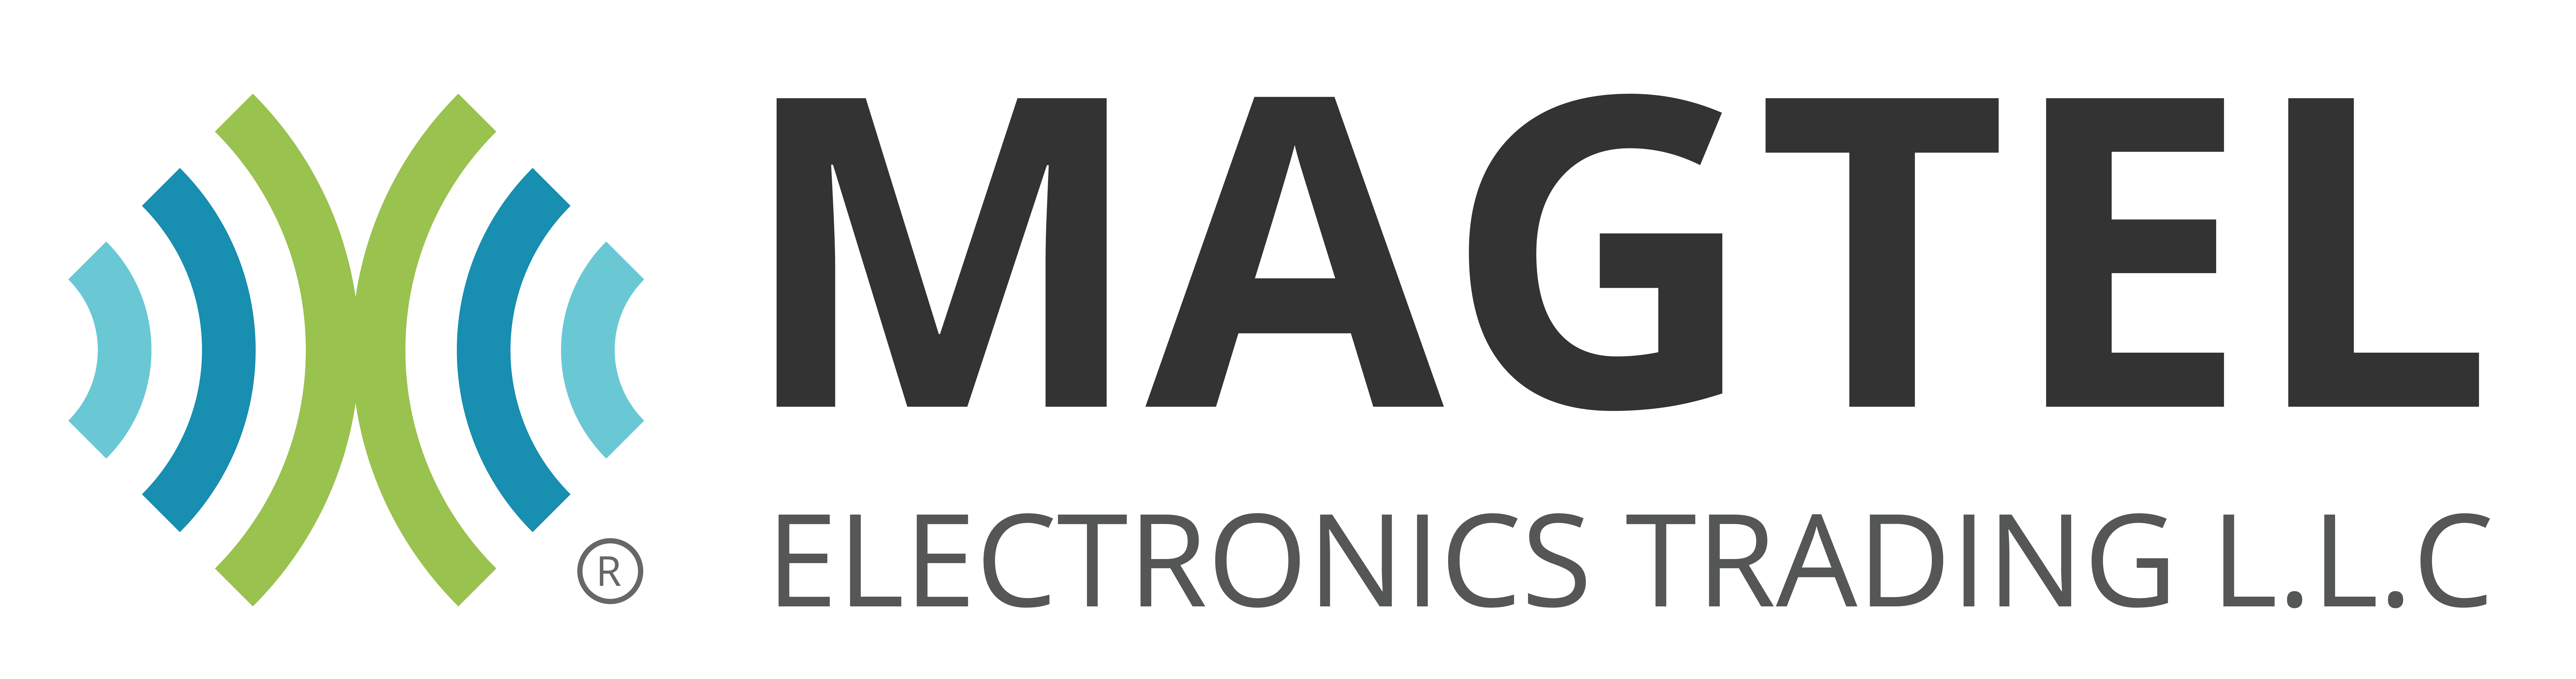 Magtel Electronics Trading L.L.C Logo